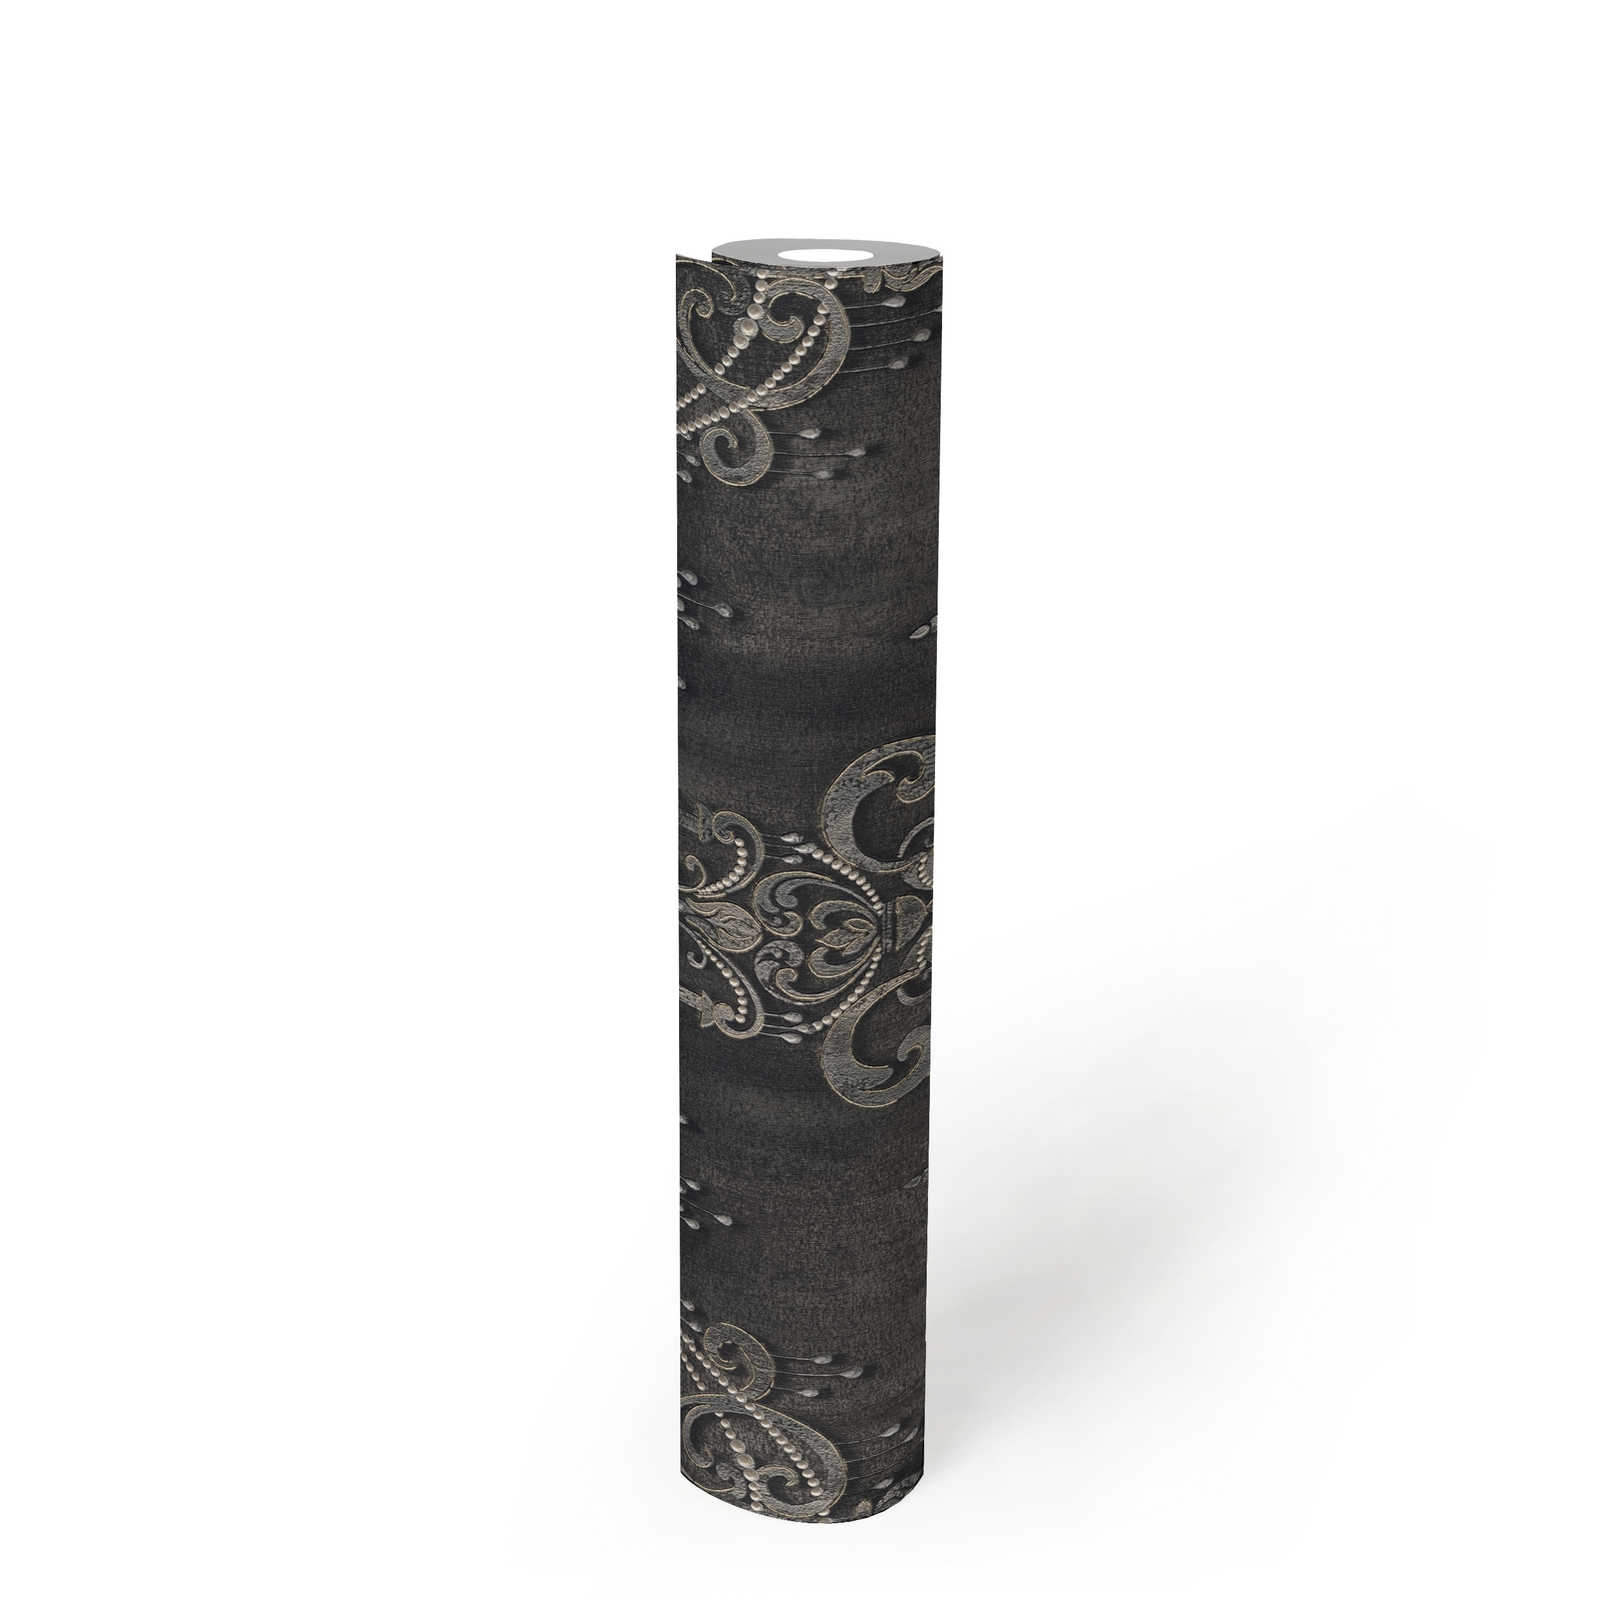             Papel pintado negro con motivos perlados, adornos y efecto metálico
        